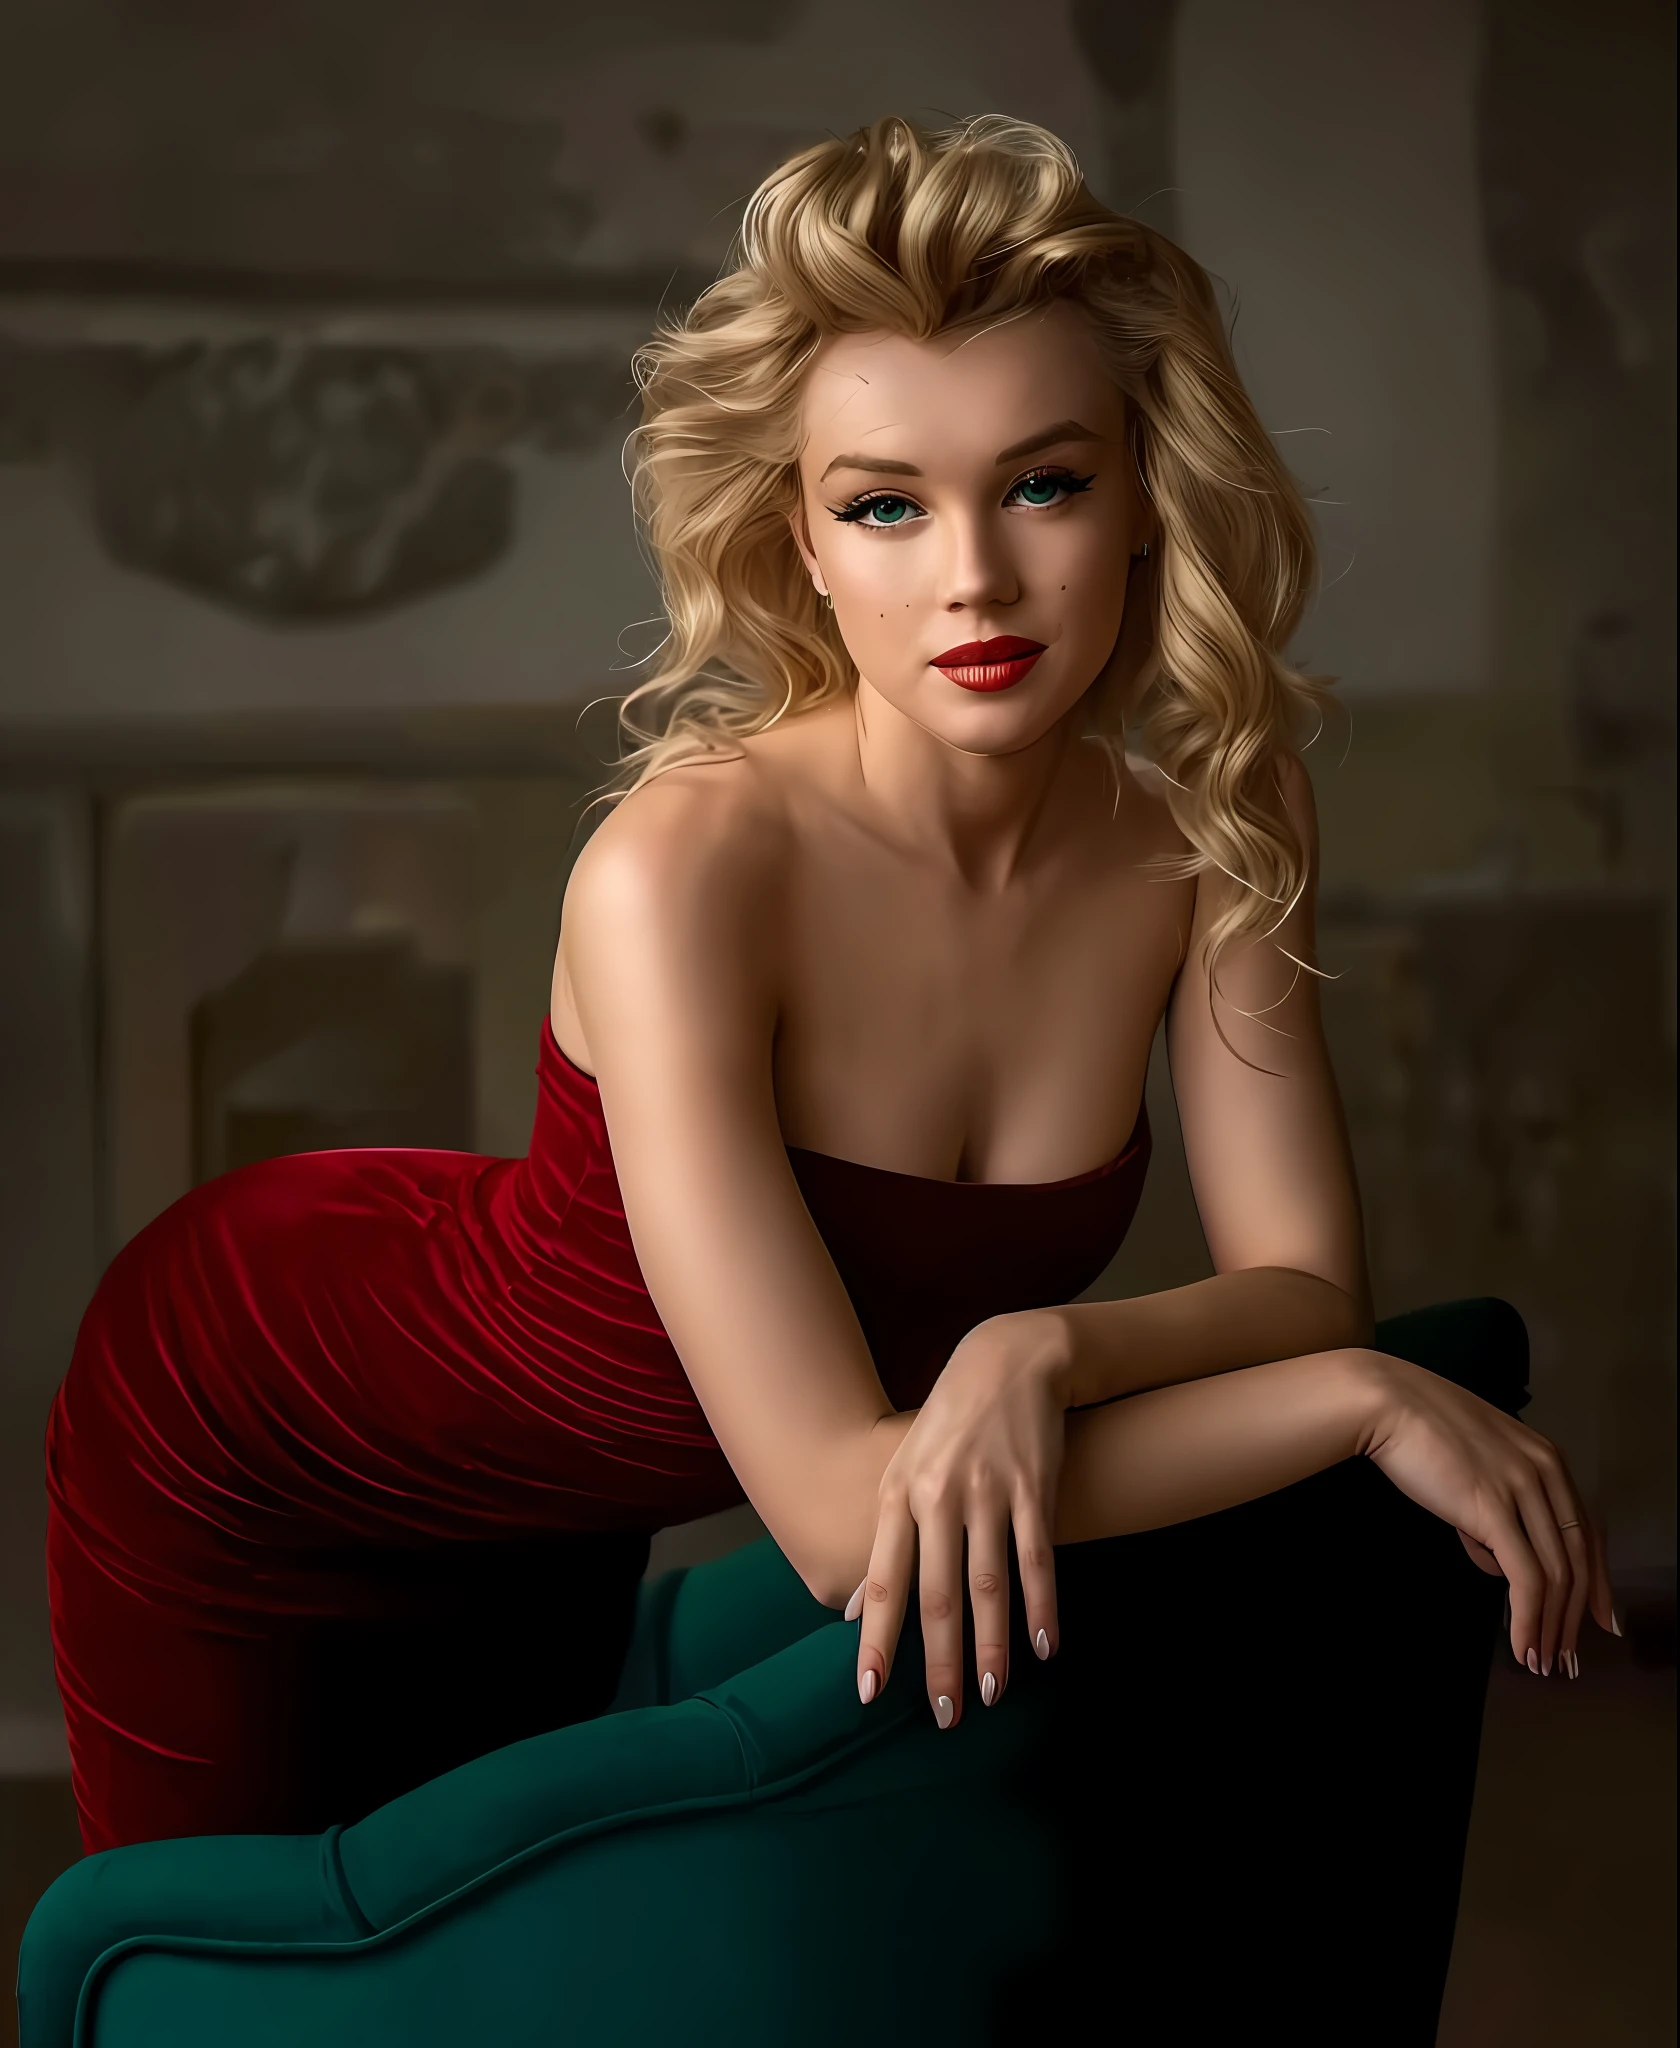 มาริลิน มอนโรในชุดสีแดงนั่งอยู่บนเก้าอี้สีเขียวในห้อง, รูปถ่ายของผู้หญิงสวย, ท่าโพสที่สวยงามน่าทึ่ง, ผู้หญิงน่ารัก, ผู้หญิงที่น่าดึงดูด, เยเลนา เบโลวา, มาริลีนมอนโรที่สวยงาม , ผู้หญิงที่งดงาม, ผู้หญิงผมบลอนด์สวย, ผู้หญิงสวยที่งดงาม, ท่าเย้ายวนใจ, ผู้หญิงที่สวยมาก, นางแบบสาวสวย, นางแบบสาวสวย, หญิงสาวที่สวยมาก, สาวสวยผมบลอนด์